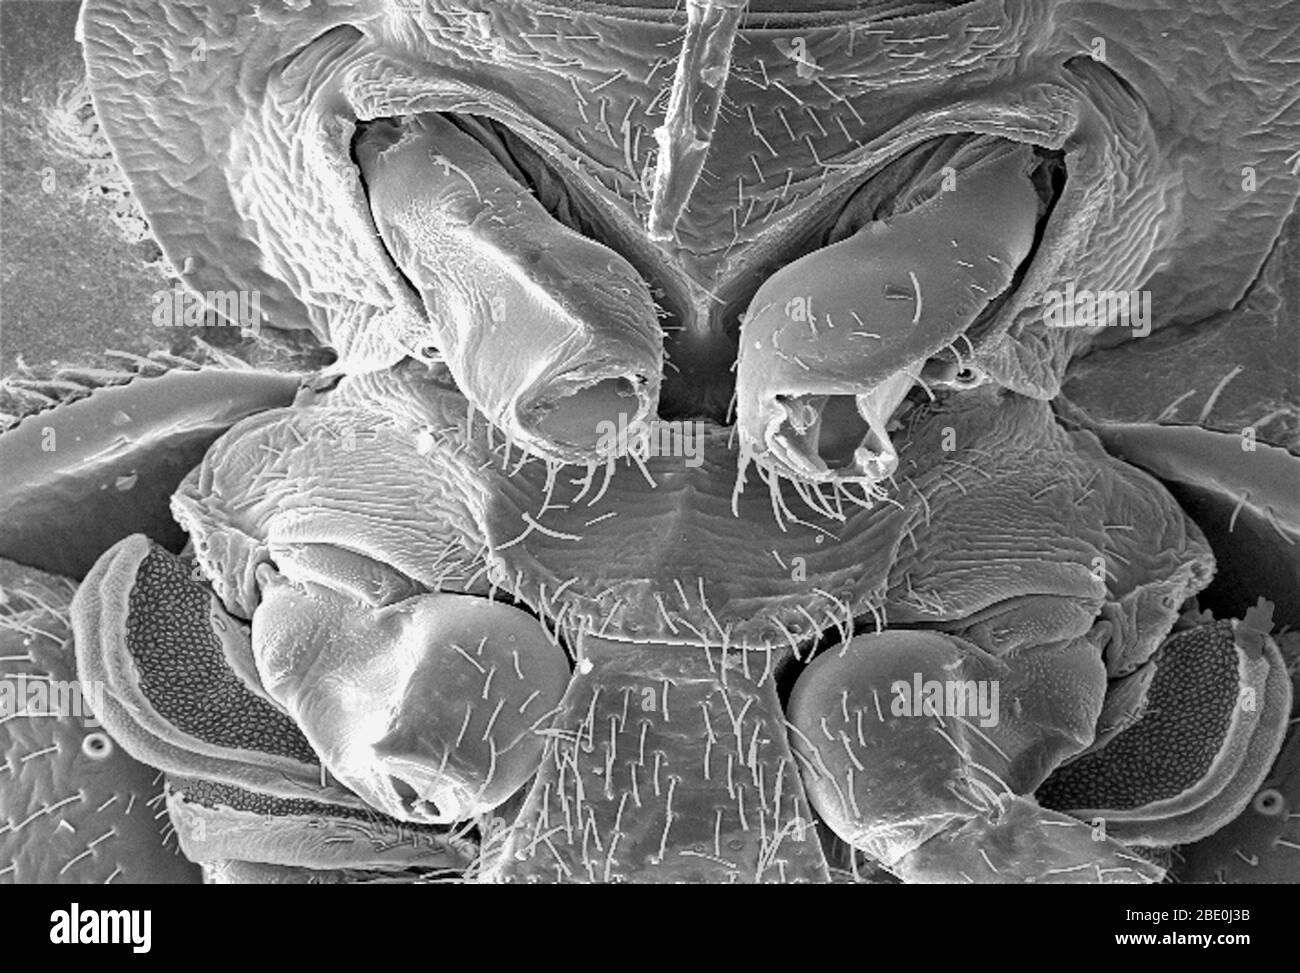 La micrografia elettronica a scansione (SEM) ha rivelato alcune morfologie ultrastrutturali visualizzate sulla superficie ventrale di un bedbug, il Cimex lectularius. Da questa vista, in alto, si può vedere la pelle dell'insetto che perfora i boccagli che usa per ottenere il suo pasto di sangue, così come un certo numero di sue sei gambe articolate disarticolate. Noterete anche una bella struttura diafana nella parte inferiore dell'immagine. Si specula che questo meraviglioso organo ultrostrutturale sia molto probabilmente una ghiandola profumata, o correlata alla diffusione del profumo, che può essere feromonale in natura. Un'ulteriore dissezione di questo, e. Foto Stock